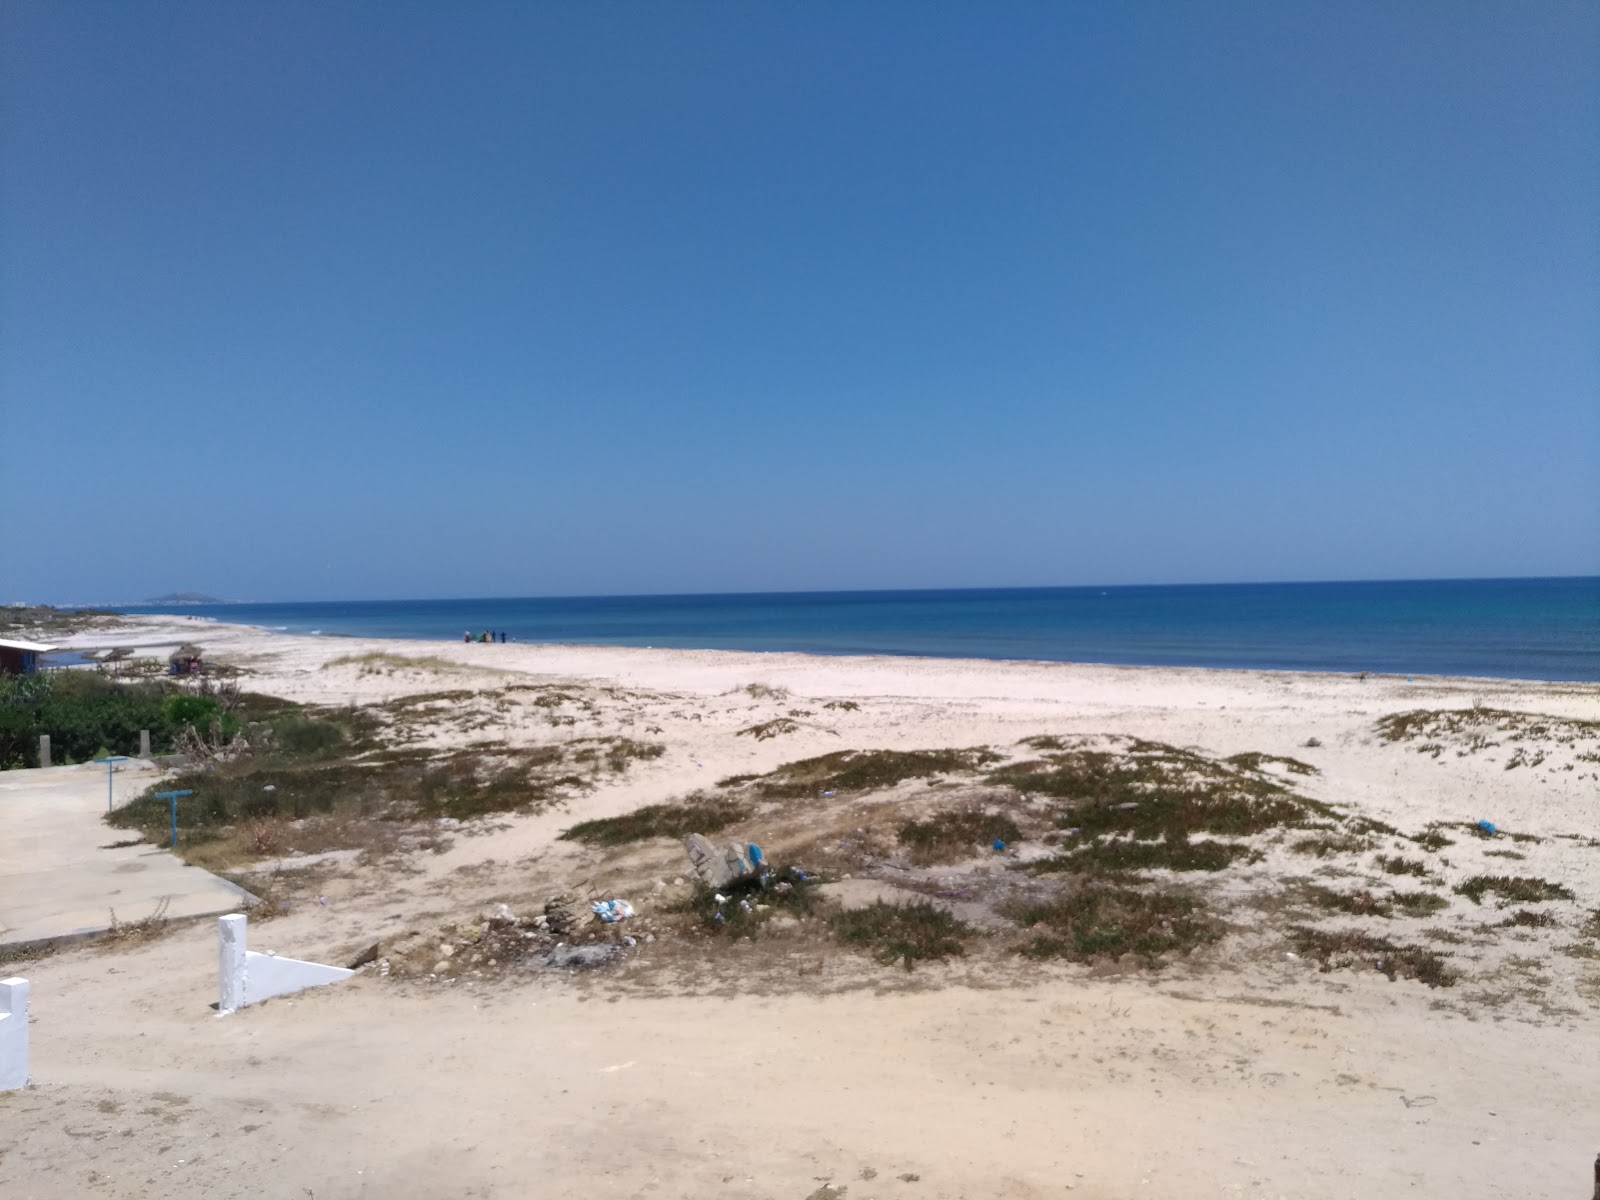 Fotografie cu EL Mrigueb Beach cu o suprafață de nisip fin strălucitor